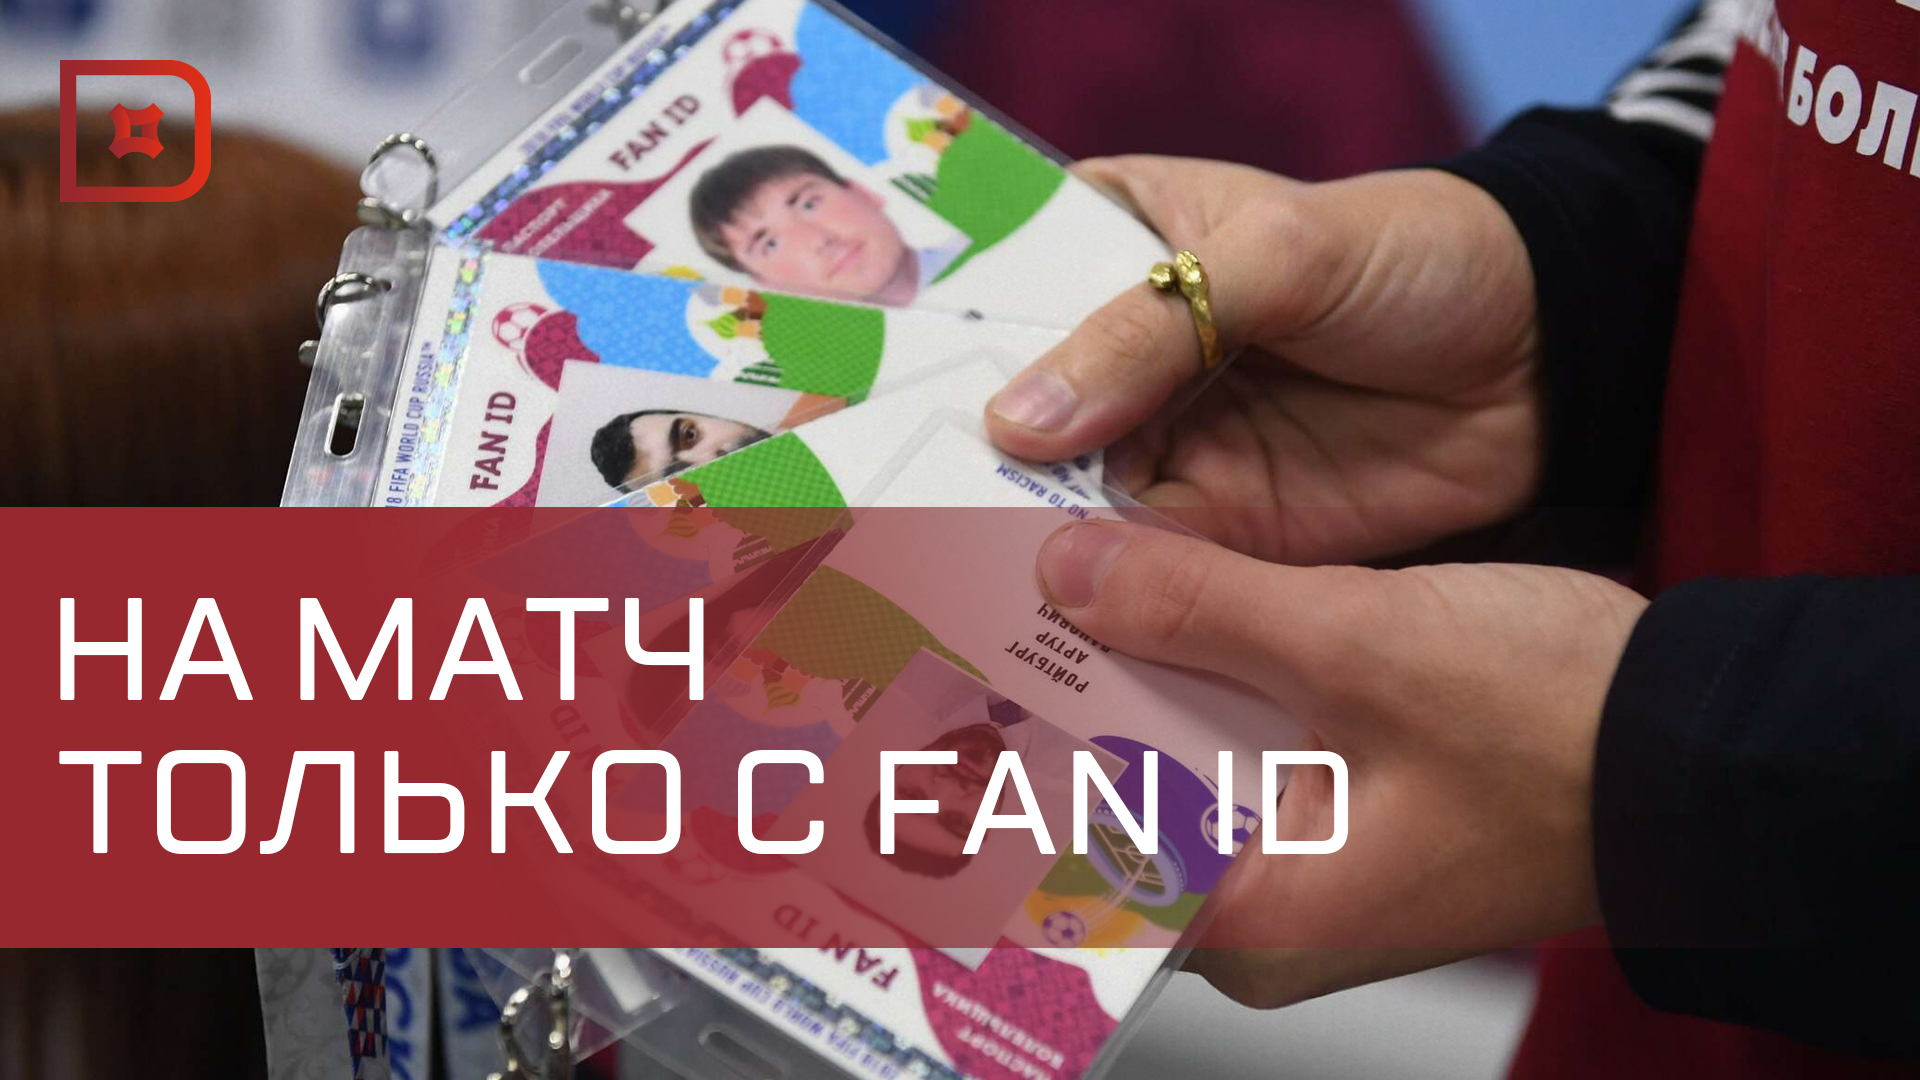 Более 200 болельщиков махачкалинского футбольного клуба «Динамо» получили Fan ID